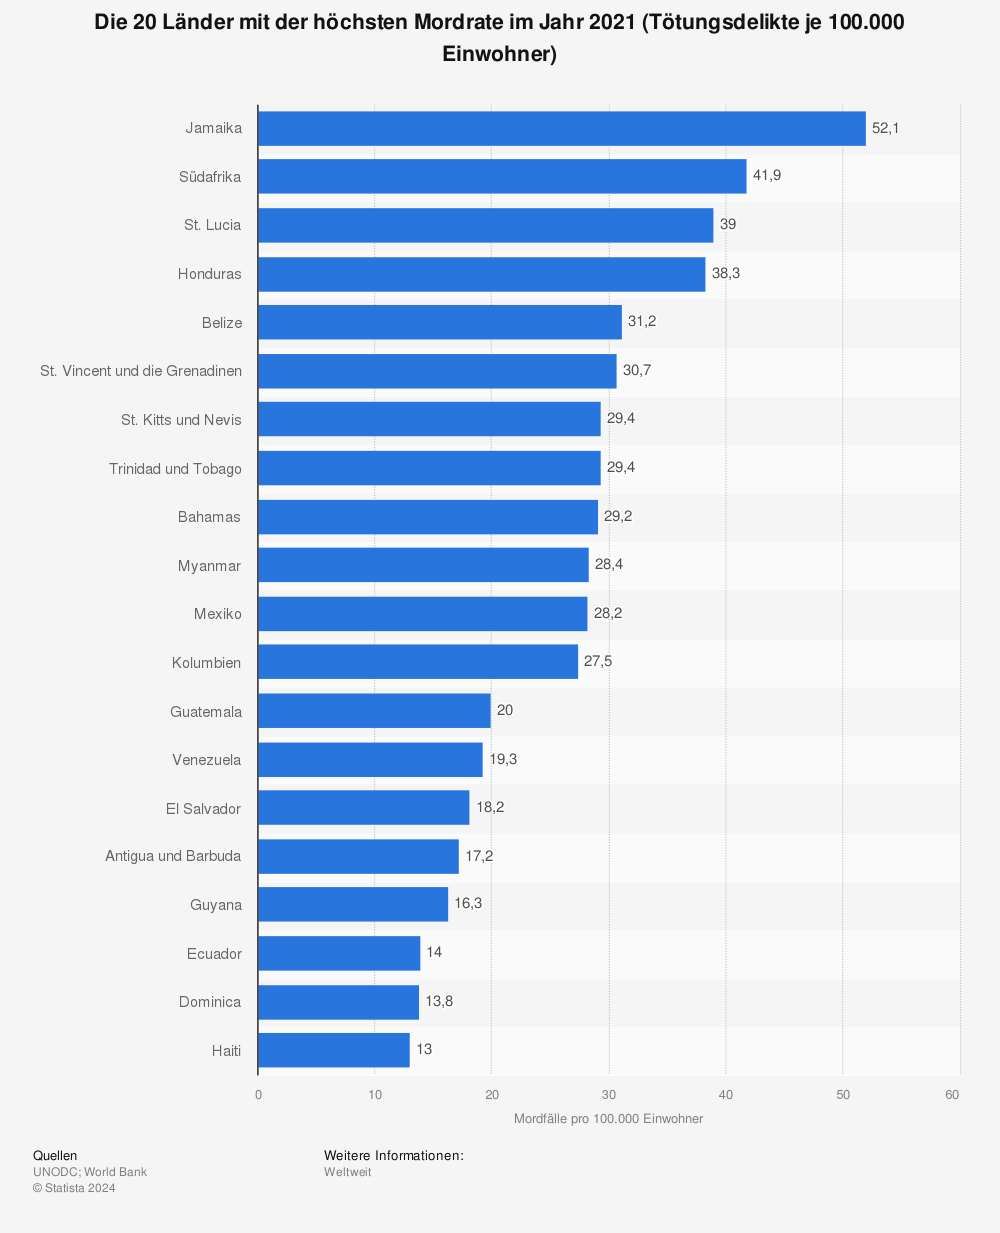 Statistik: Ranking der 20 Länder mit den meisten Mordfällen pro 100.000 Einwohner (im Zeitraum 2004 bis 2011) | Statista